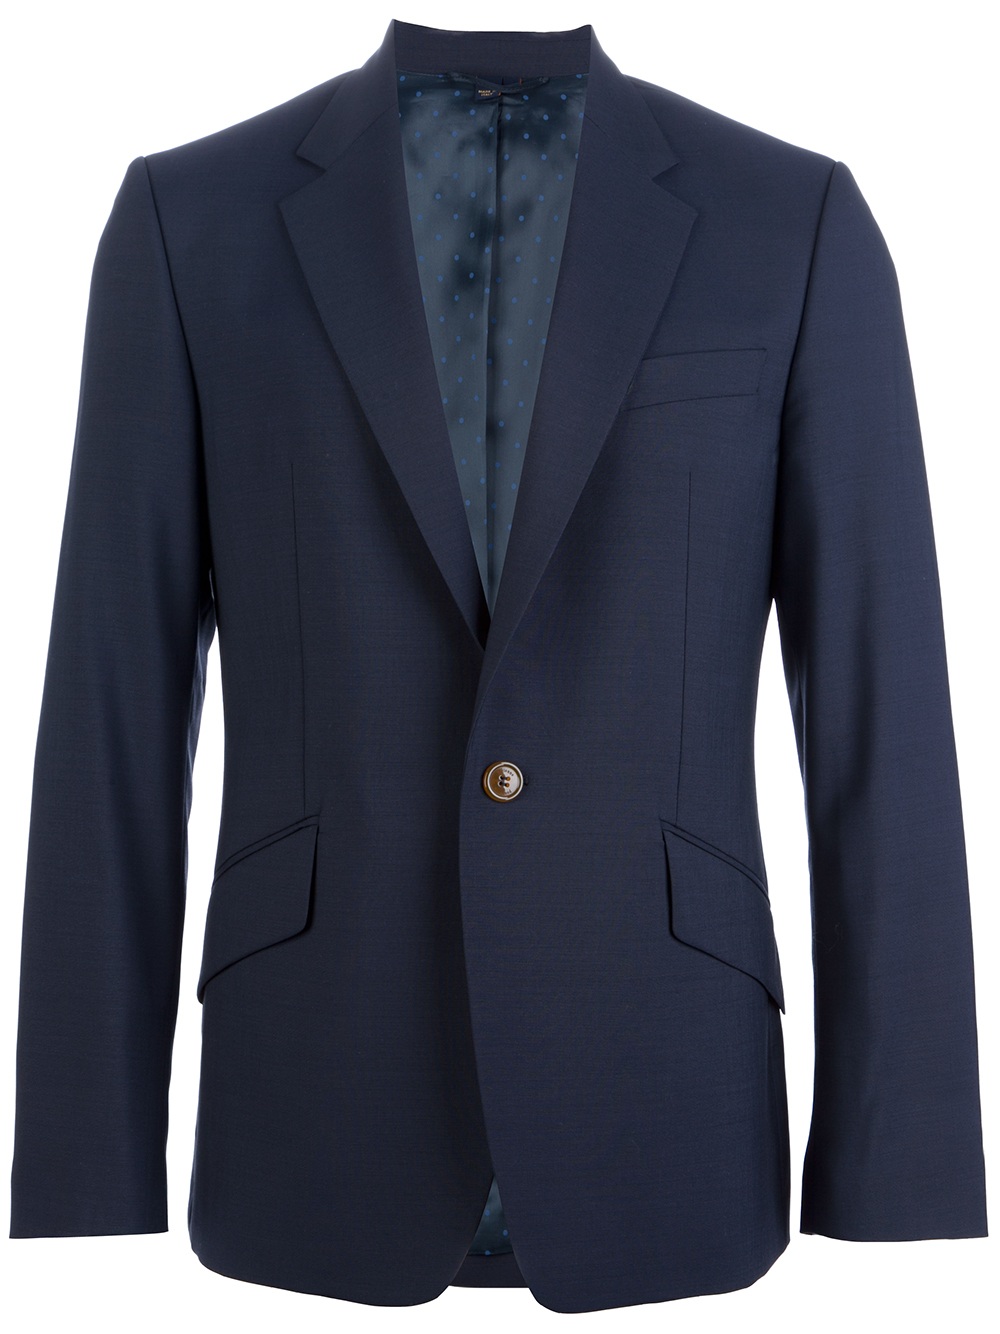 Lyst - Vivienne Westwood Slim Fit Suit in Blue for Men